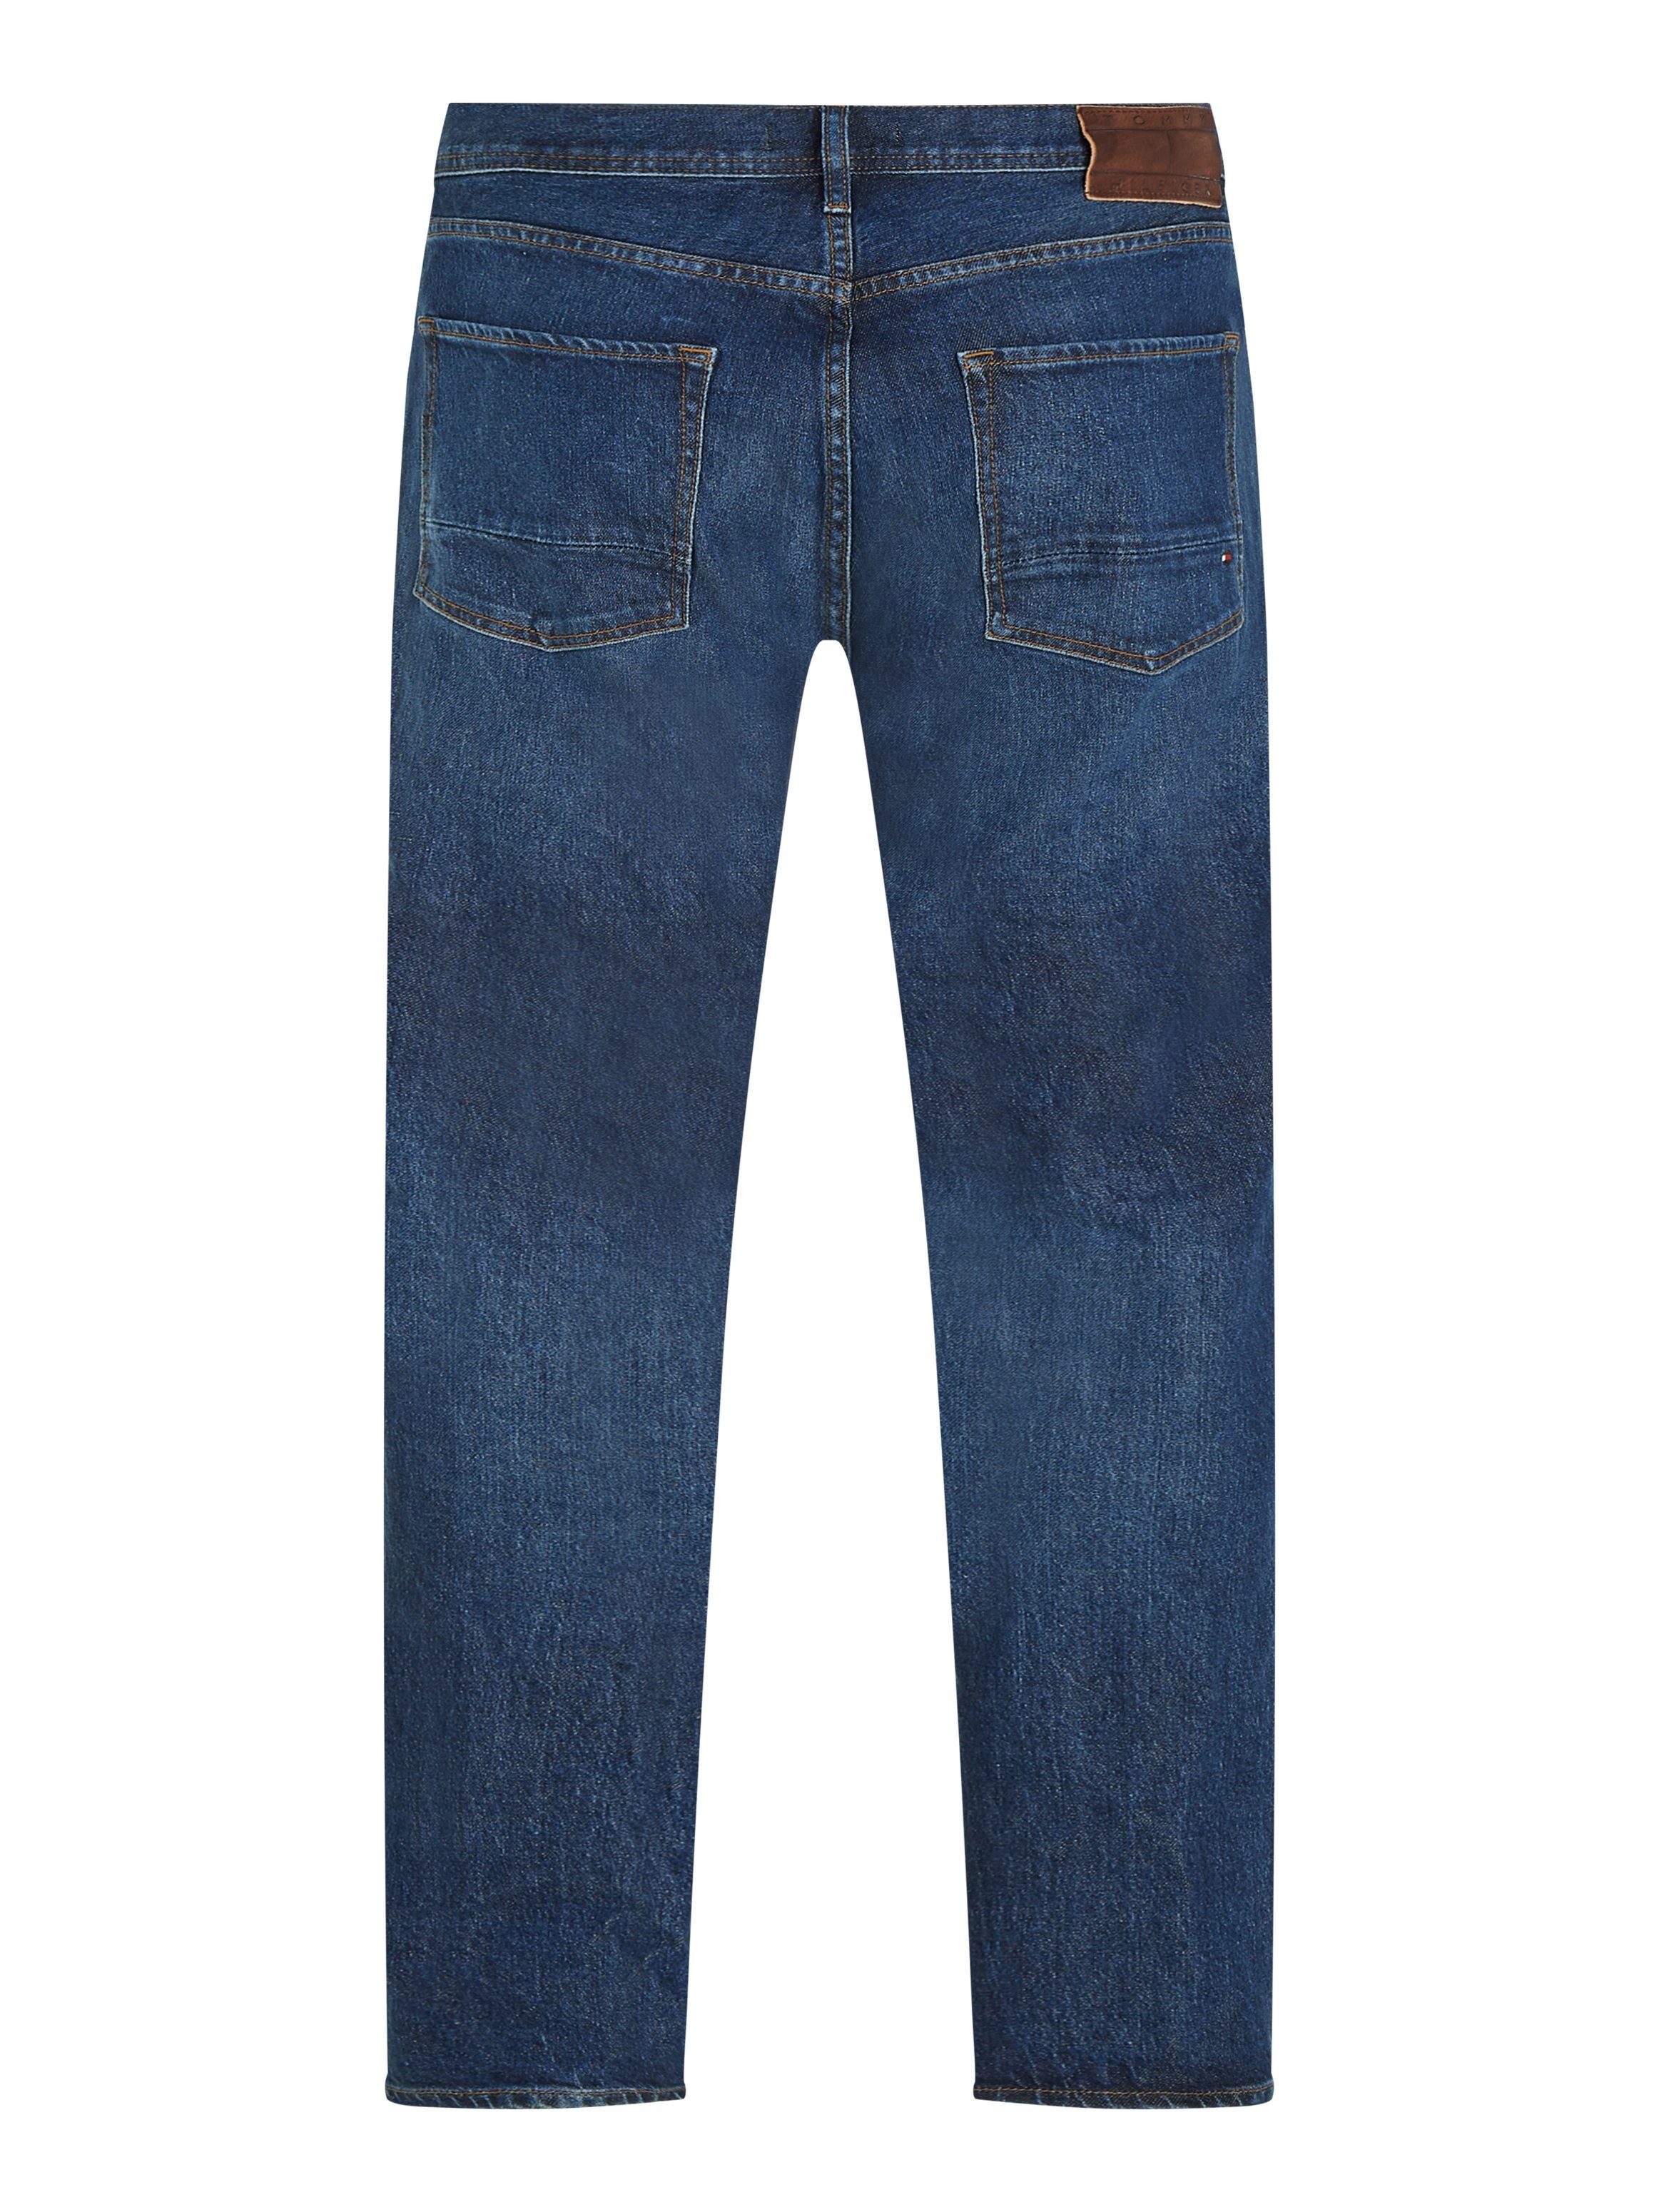 STR Straight-Jeans Bundabschluss STRAIGHT Tommy Hilfiger CHARLES indigo mit Leder-Batch BLUE DENTON hinteren am rouse Hilfiger Tommy